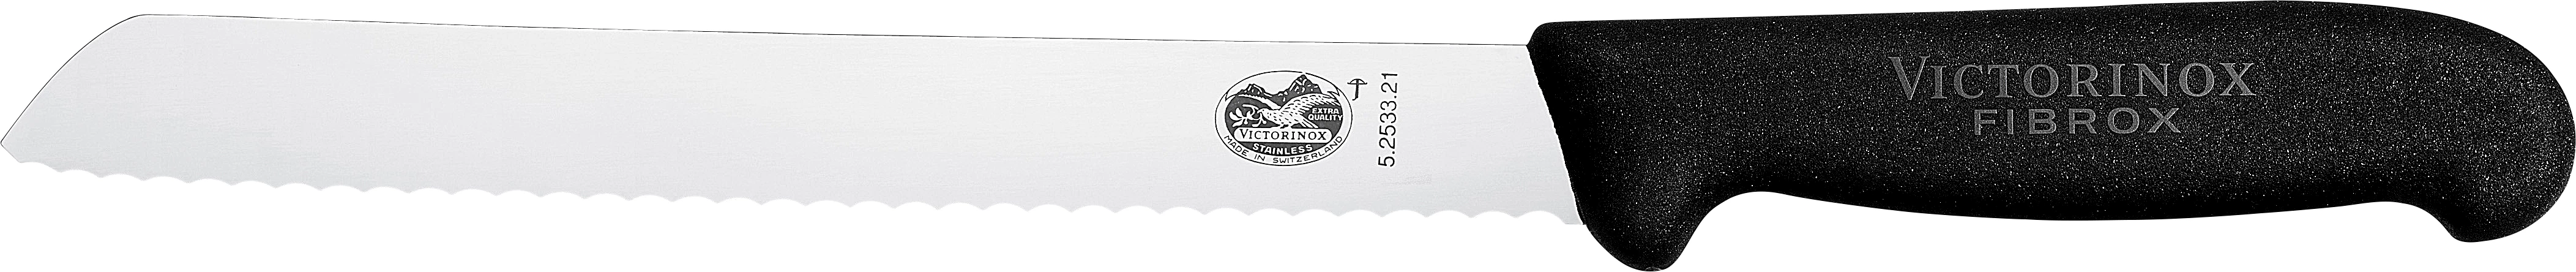 Victorinox brødkniv med plastgreb, skrå, 21 cm